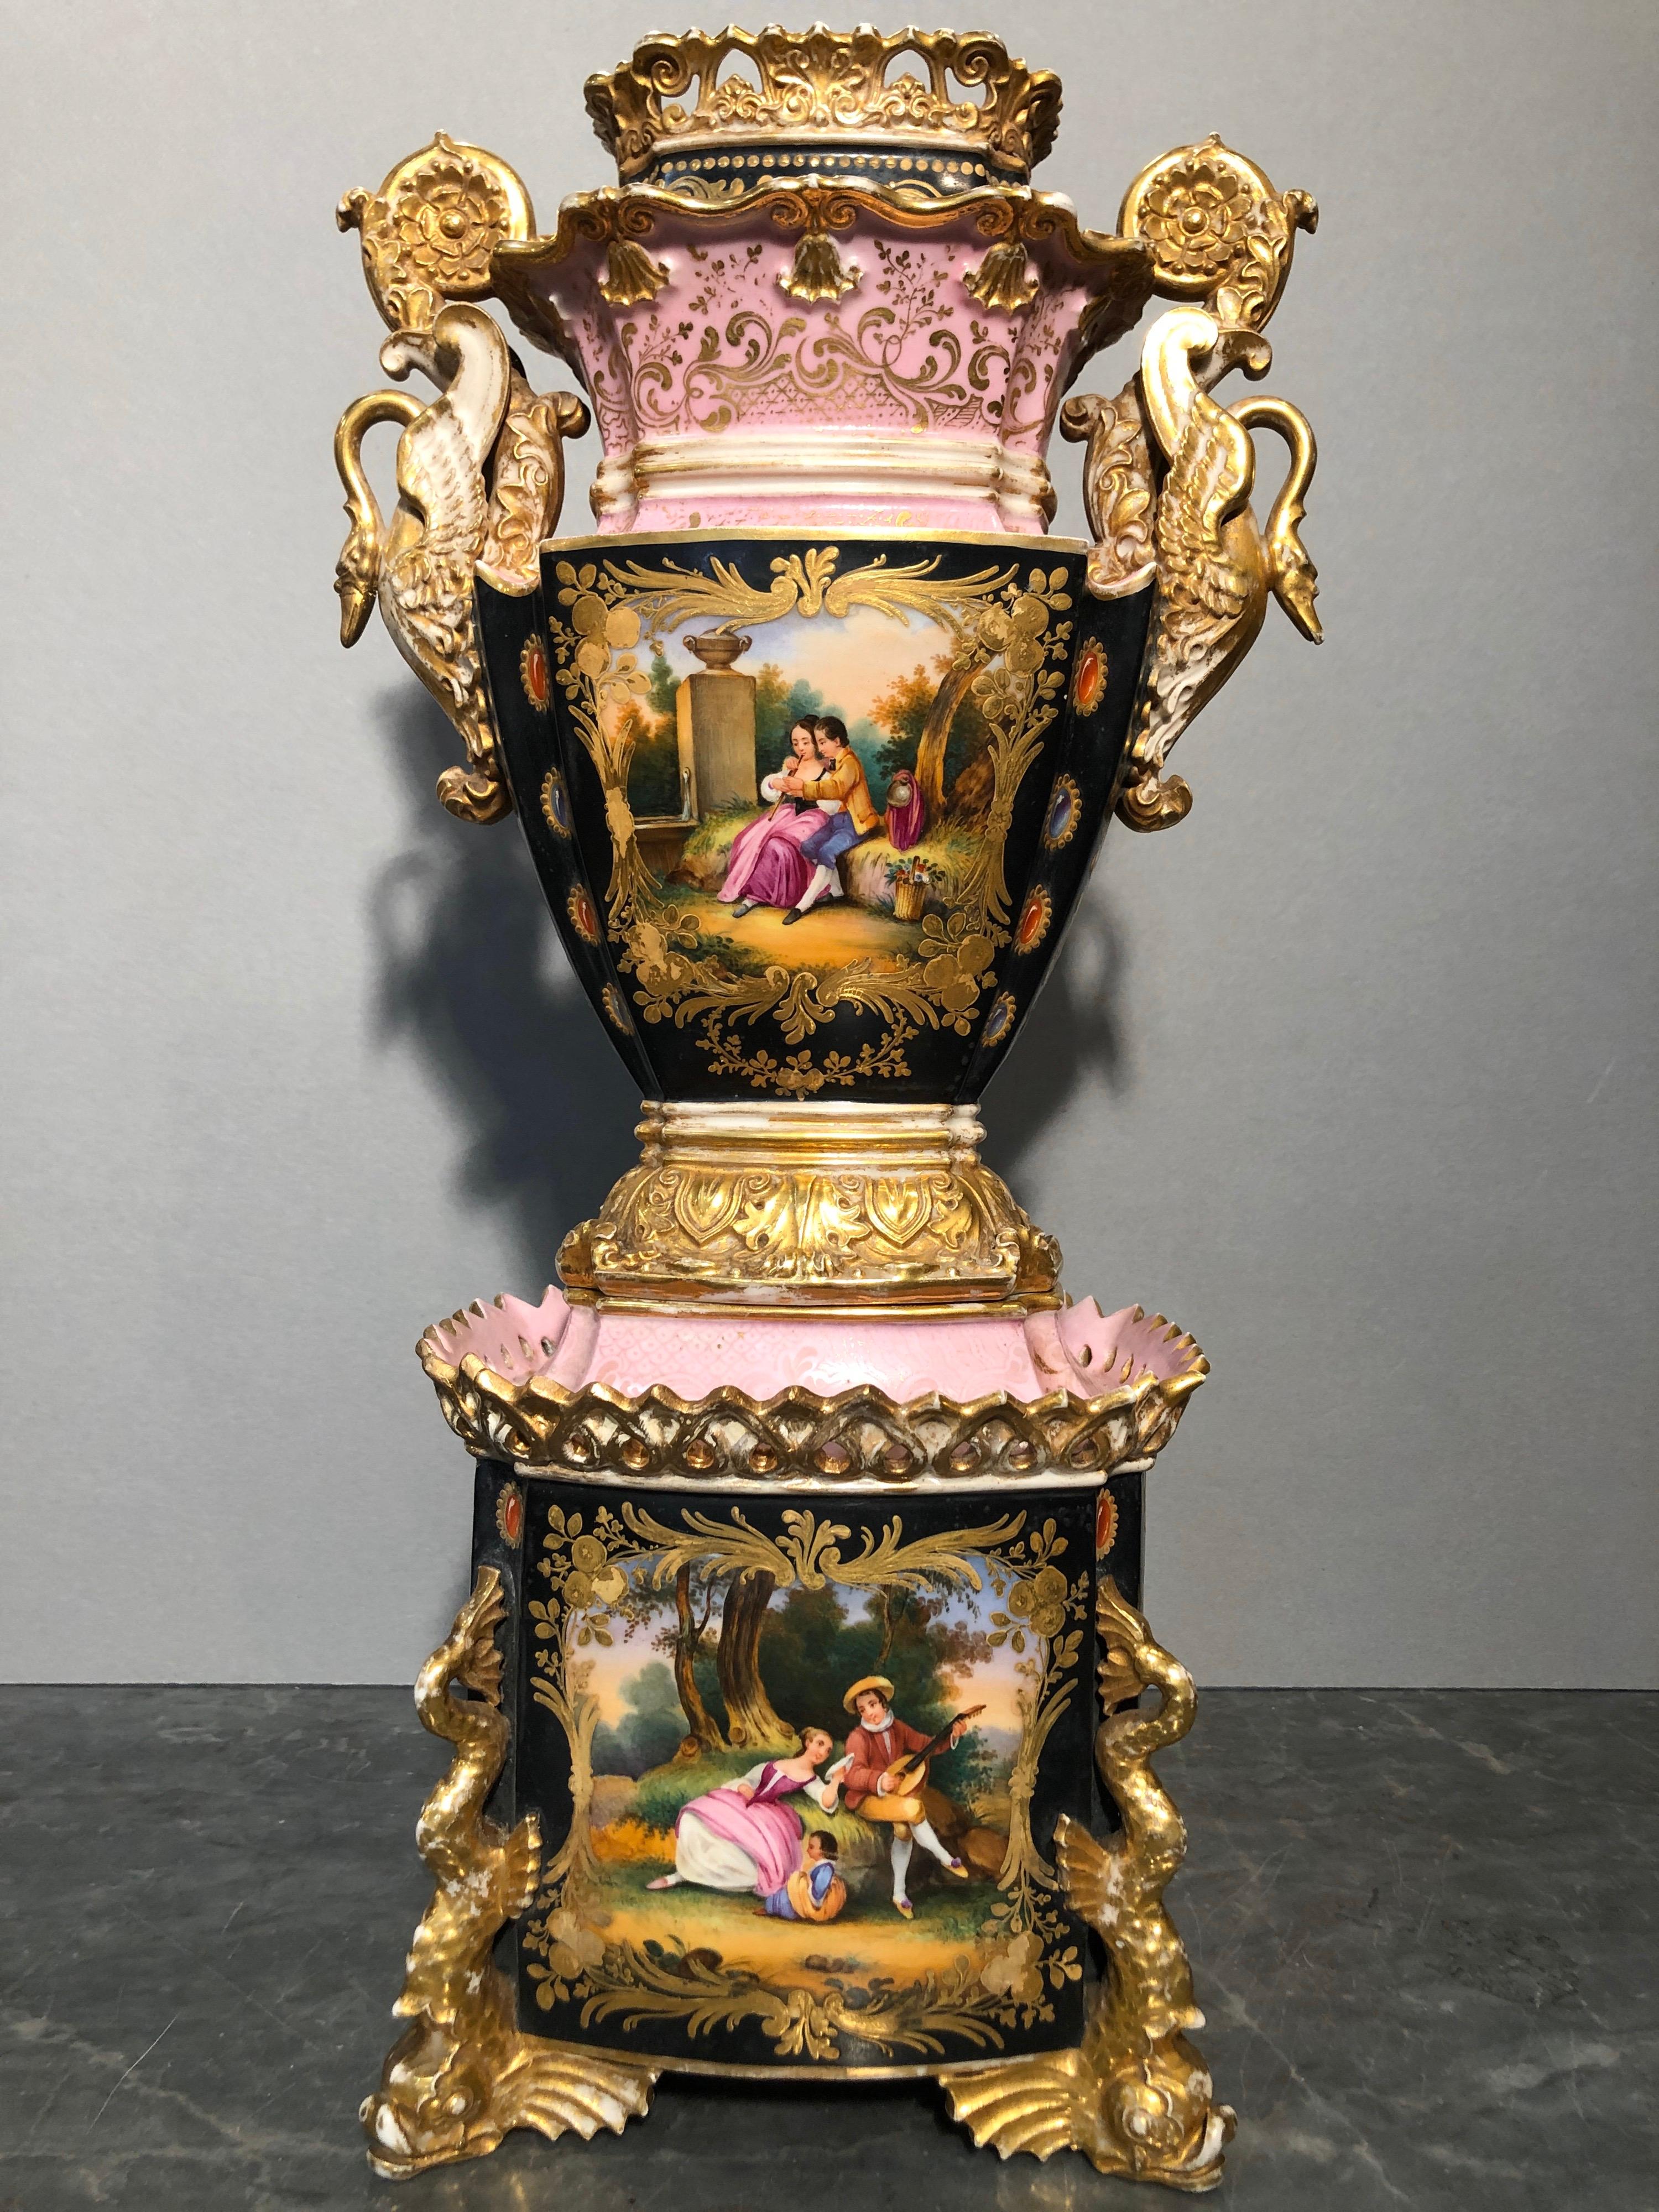 France vase, signé sous la base rectangulaire J.P.
Jacob Petit : Paris, Belleville (France). Jacob Petit y a produit de la porcelaine à partir de 1790 environ. Les produits ont été très appréciés et présentent un style individuel. Mais la